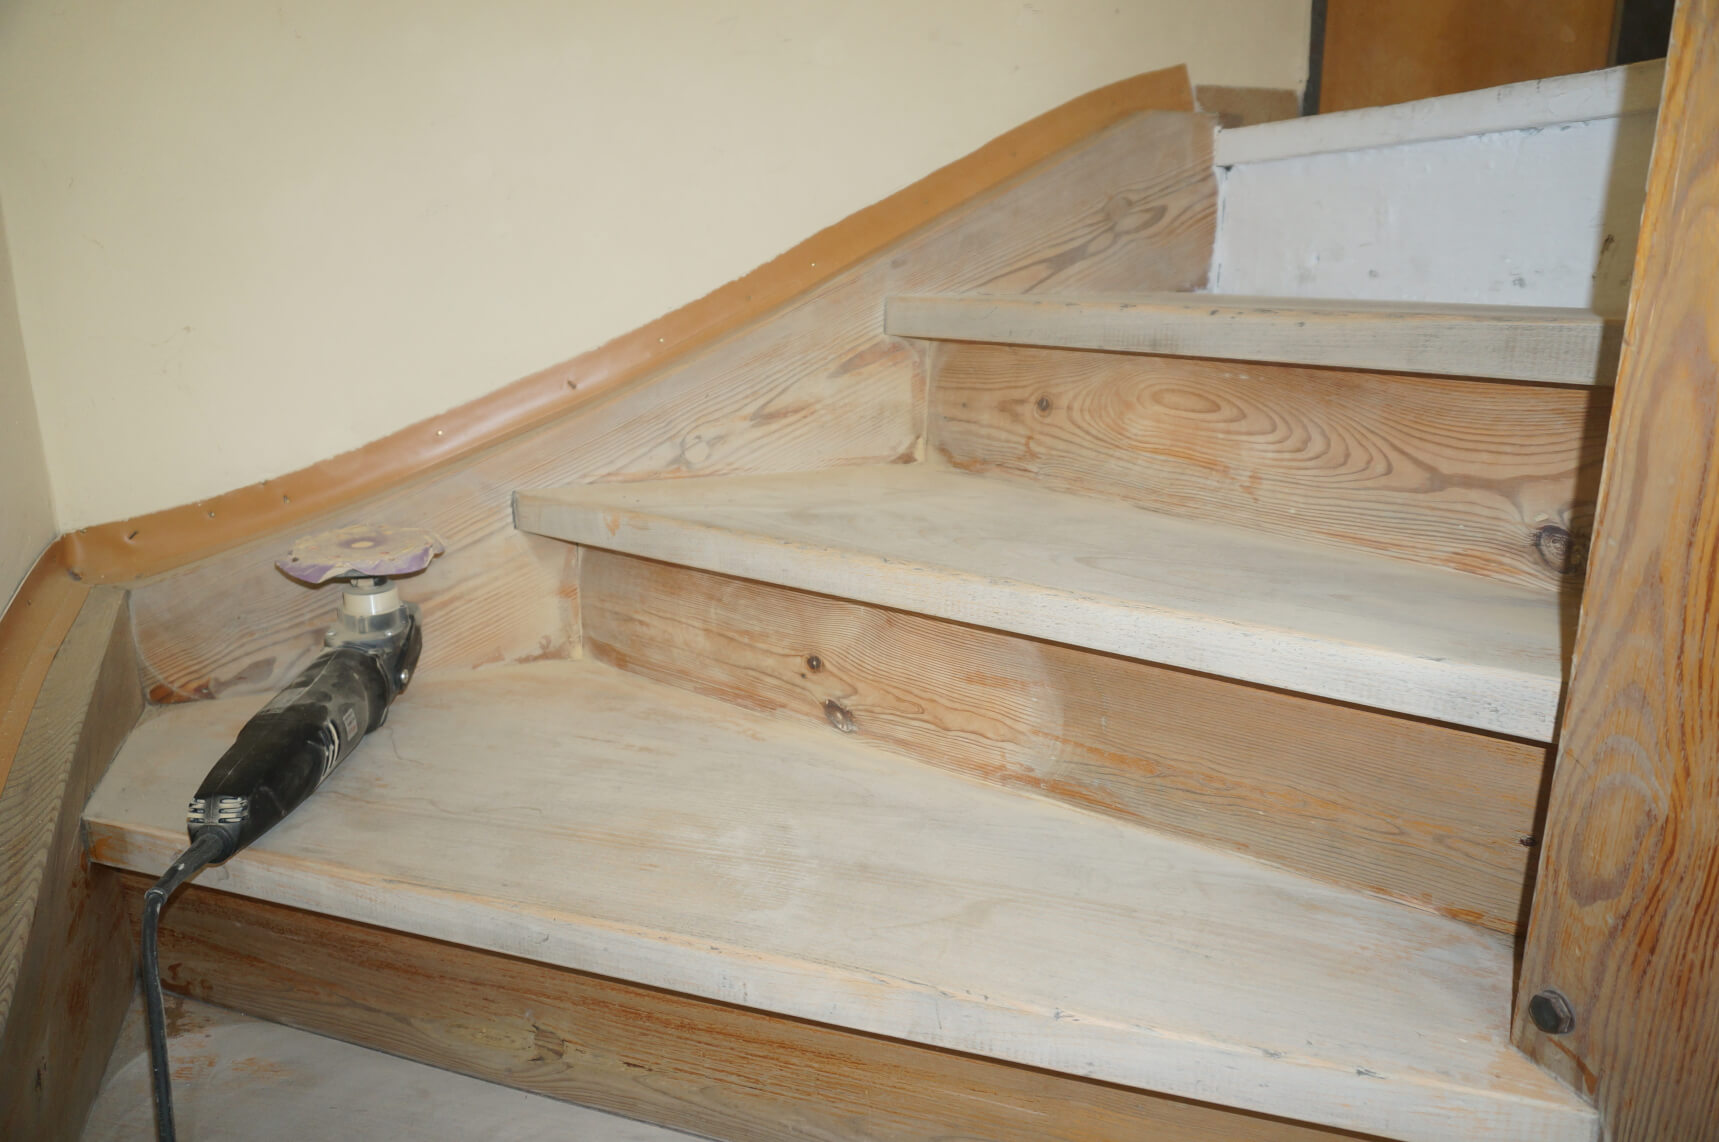 Treppensanierung - Klebefolie Holz für eine neue Holztreppe in holz grau